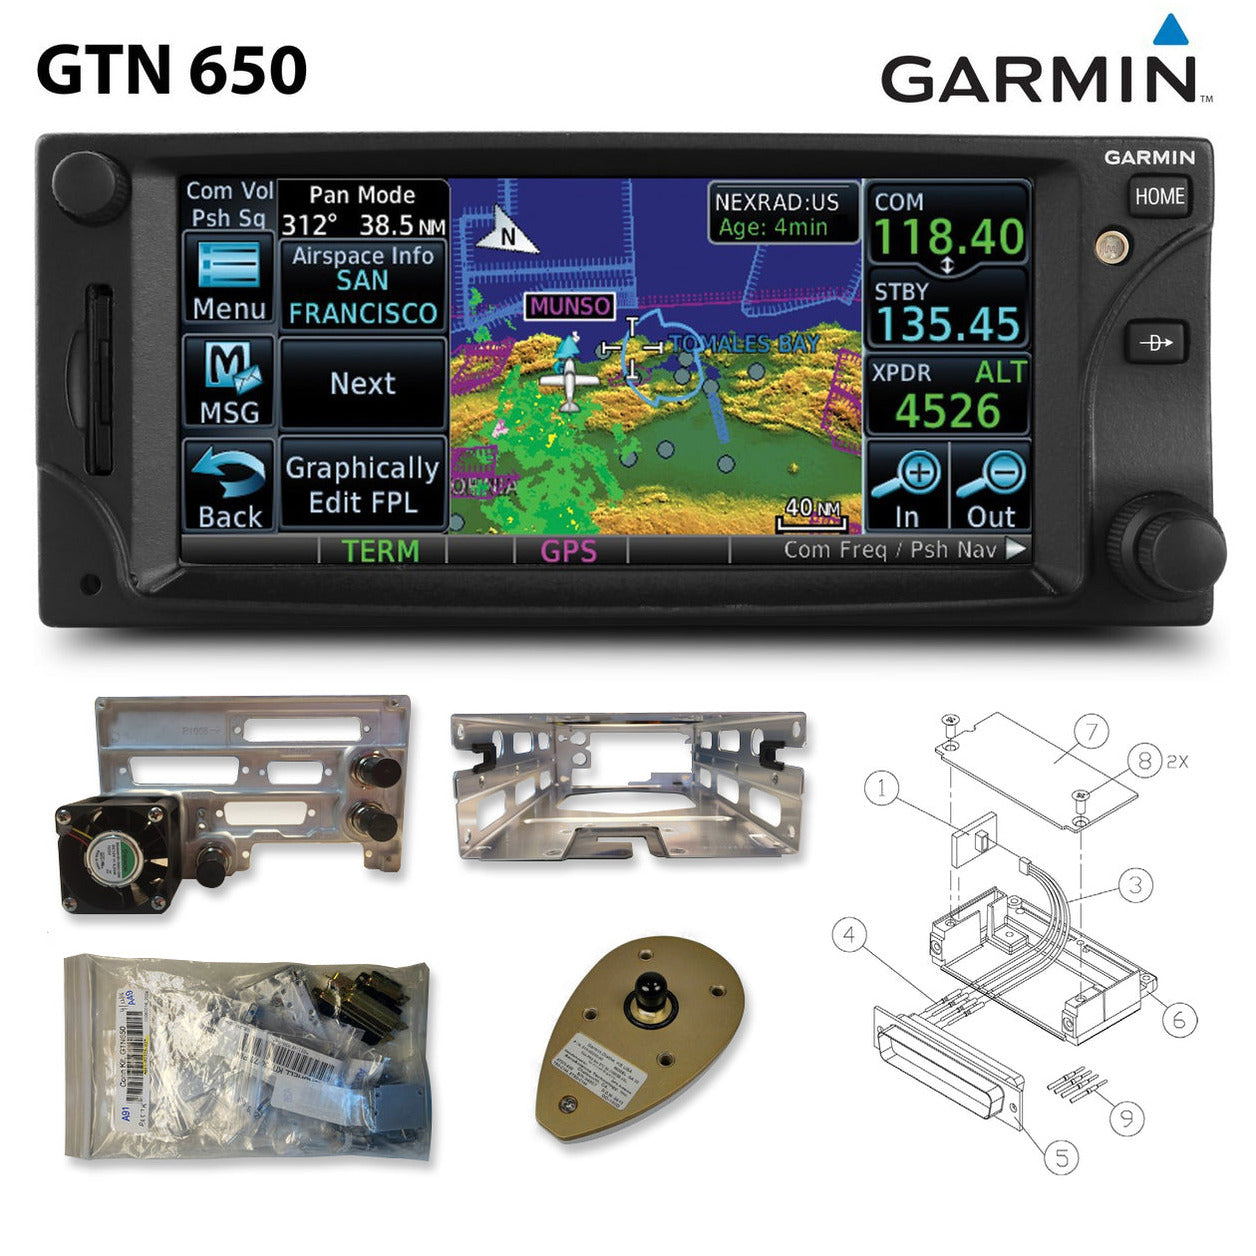 Garmin GTN 650 GPS/COM/NAV - Part Number: 011-02256-00